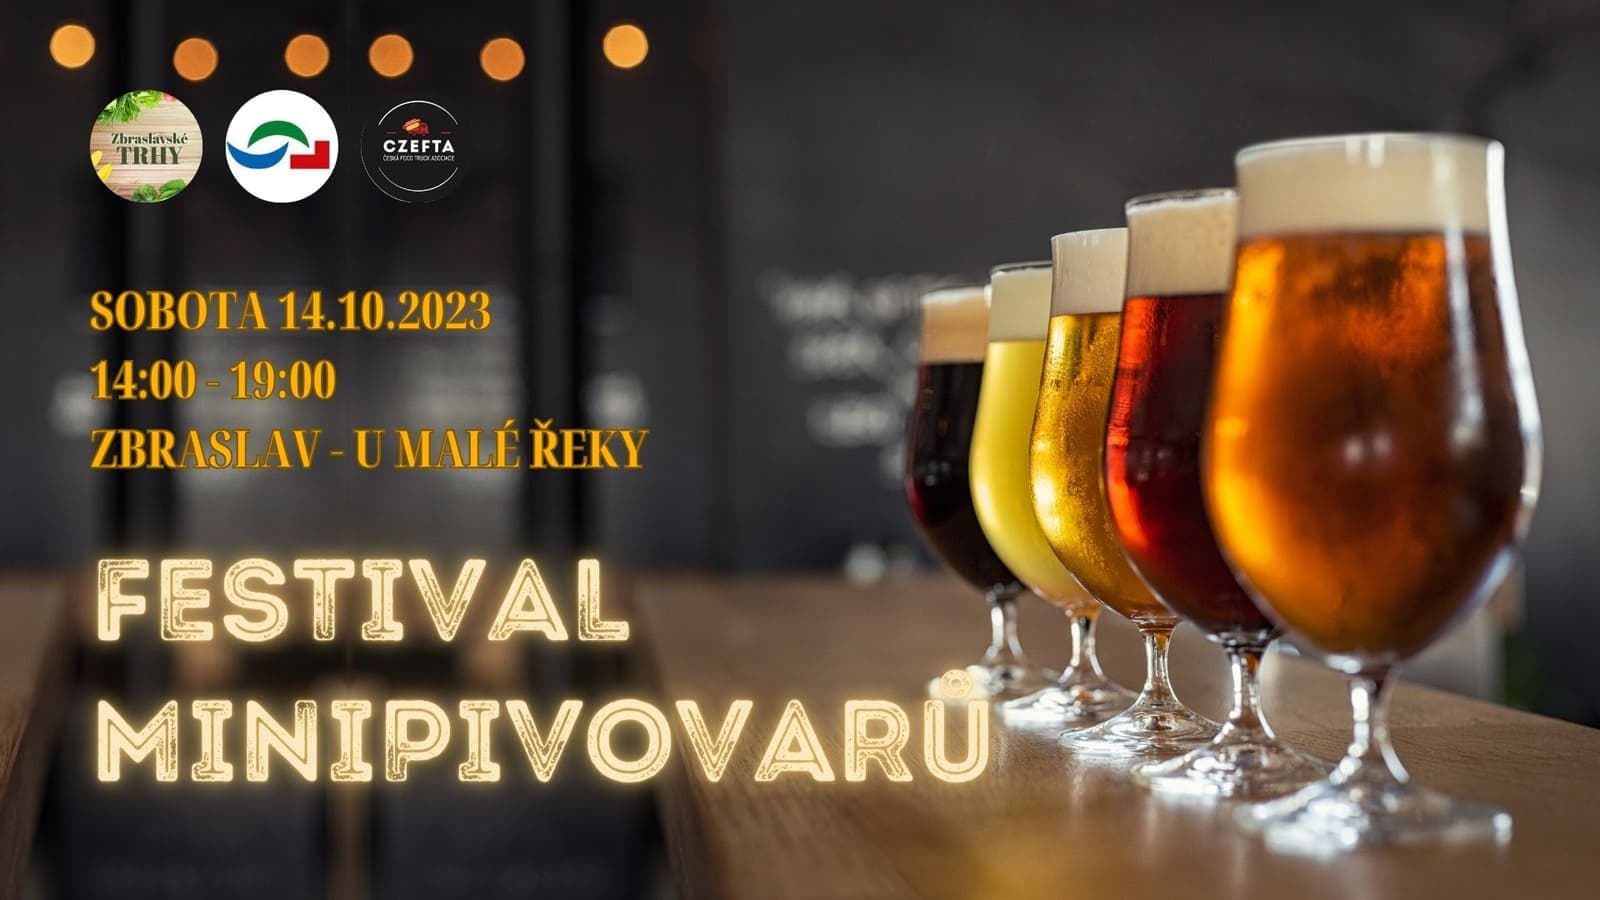 14 октября в районе Прага-Збраслав пройдет фестиваль мини-пивоварен